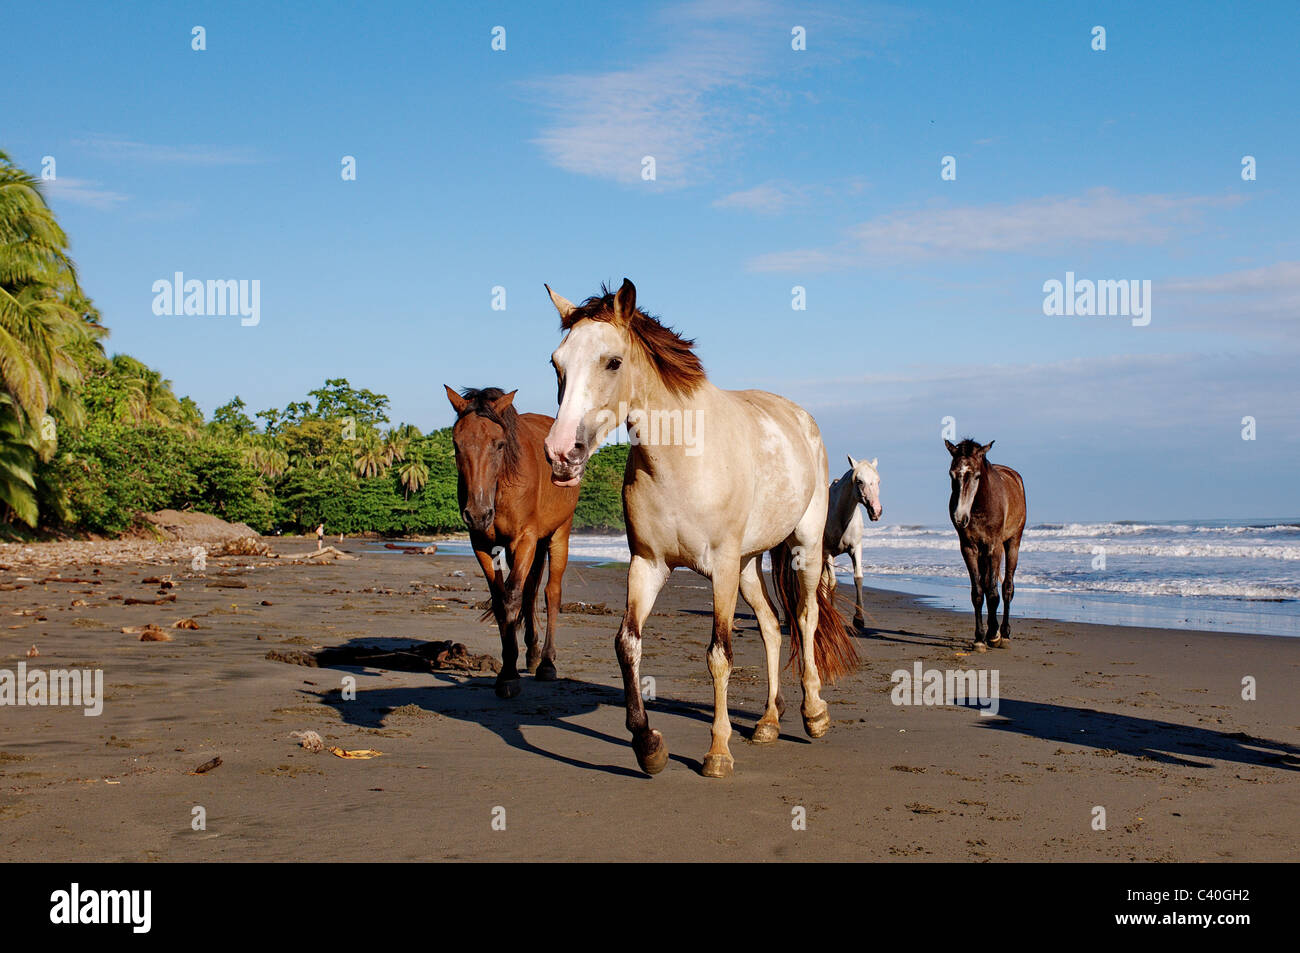 Cavallo, cavalli, Bay, sulla spiaggia, sul mare dei Caraibi, Costa Rica, Cahuita, Playa Negra, sabbia, acqua, onde, blu, vacanze, ferie Foto Stock